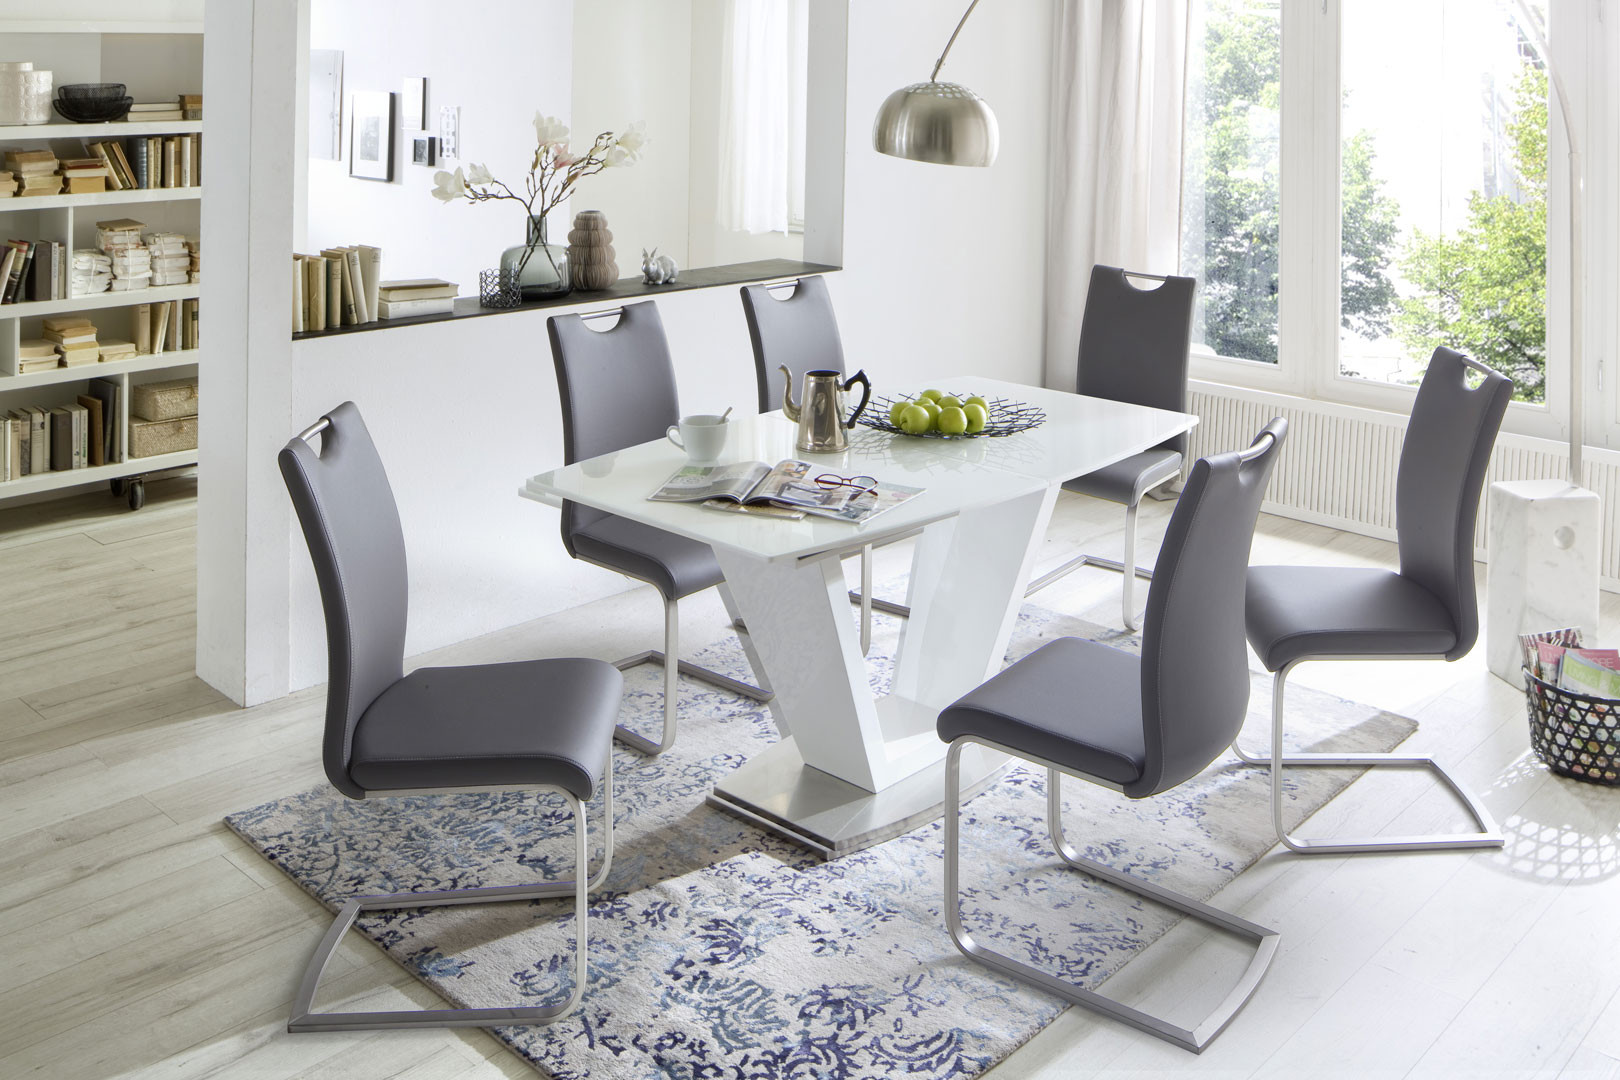  Table  de salle  manger  extensible  moderne  blanc laqu  